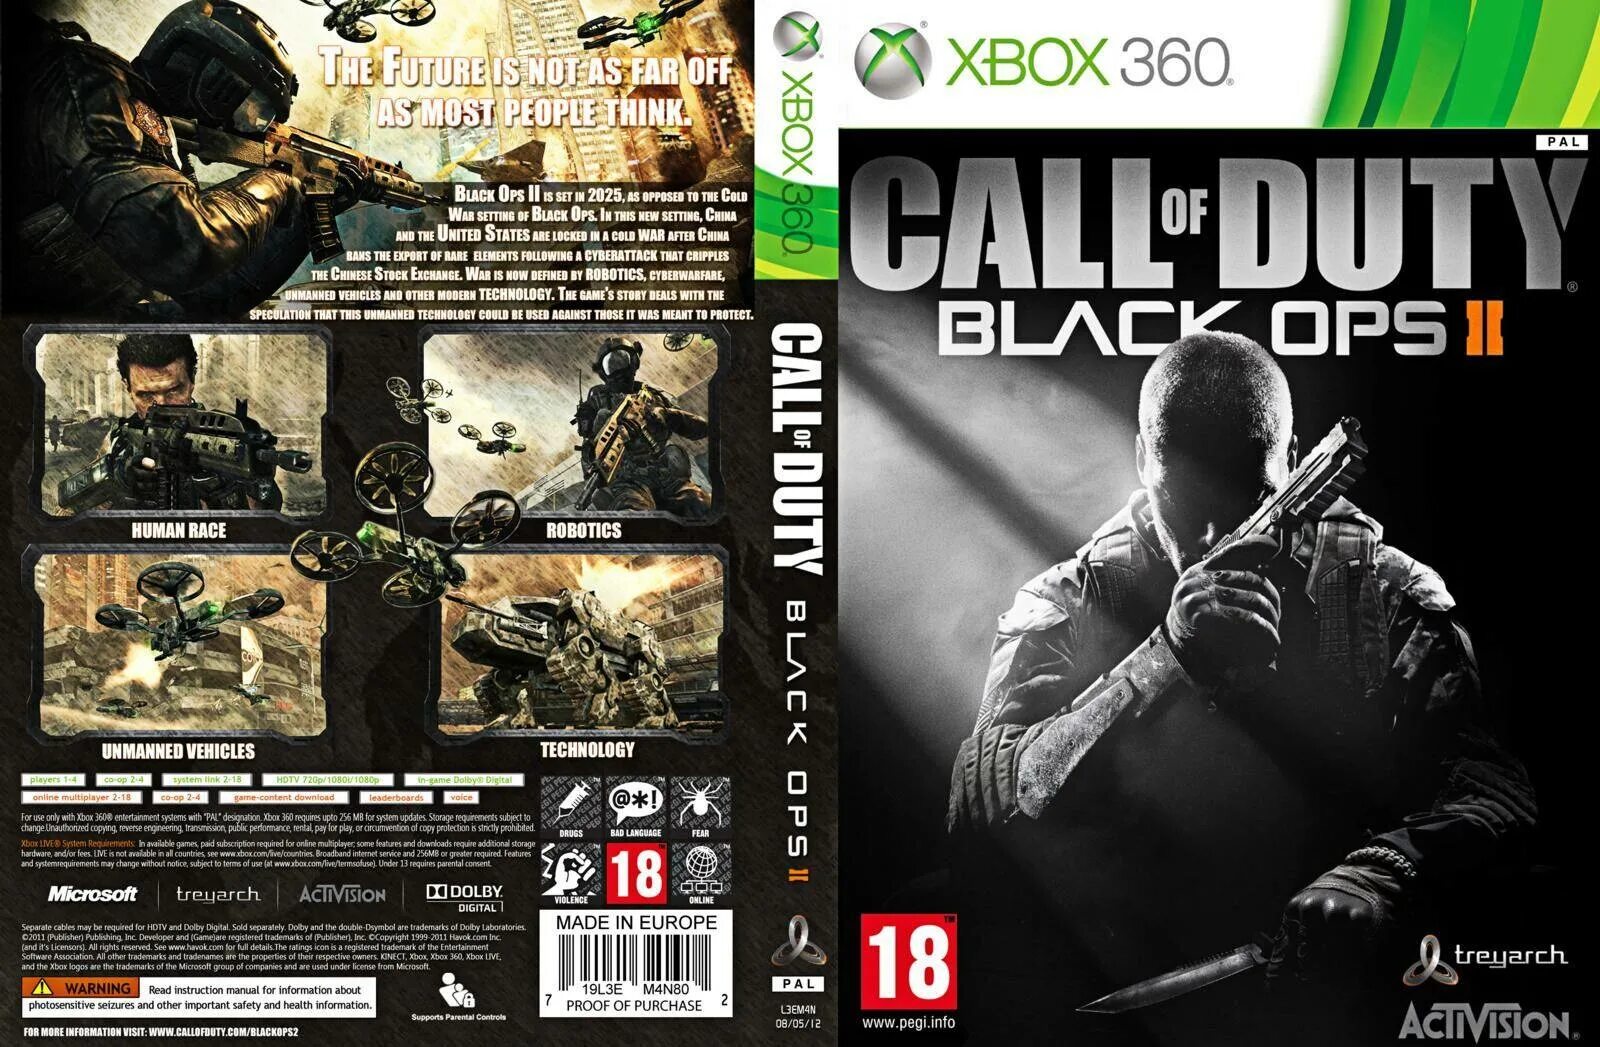 Xbox 360 игры на компьютер. Cod Black ops 2 обложка Xbox 360. Black ops Xbox 360 обложка. Call of Duty Black ops II Xbox 360 обложка. Call of Duty диск на Xbox 360.